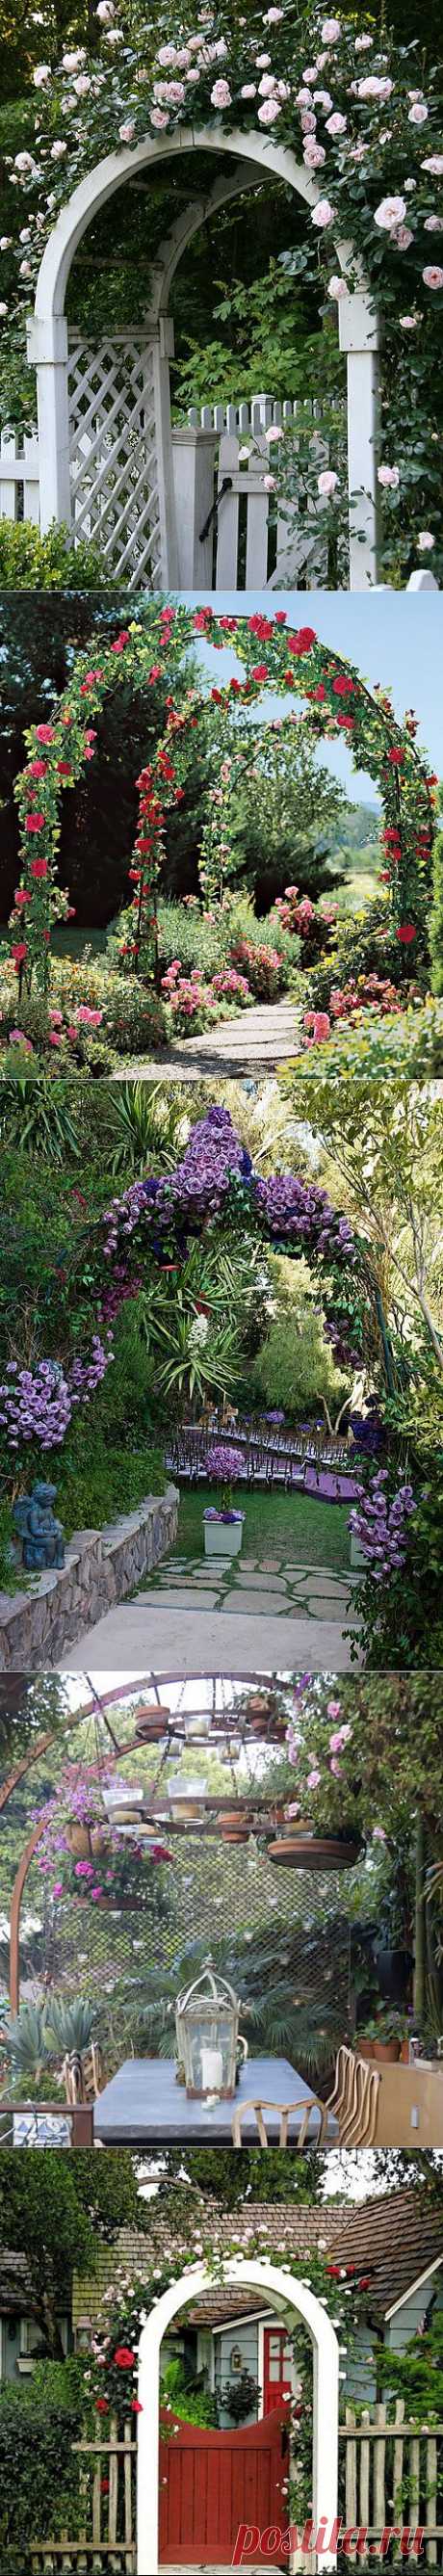 21 идея для прохладного сада (арки оплетенные цветами).